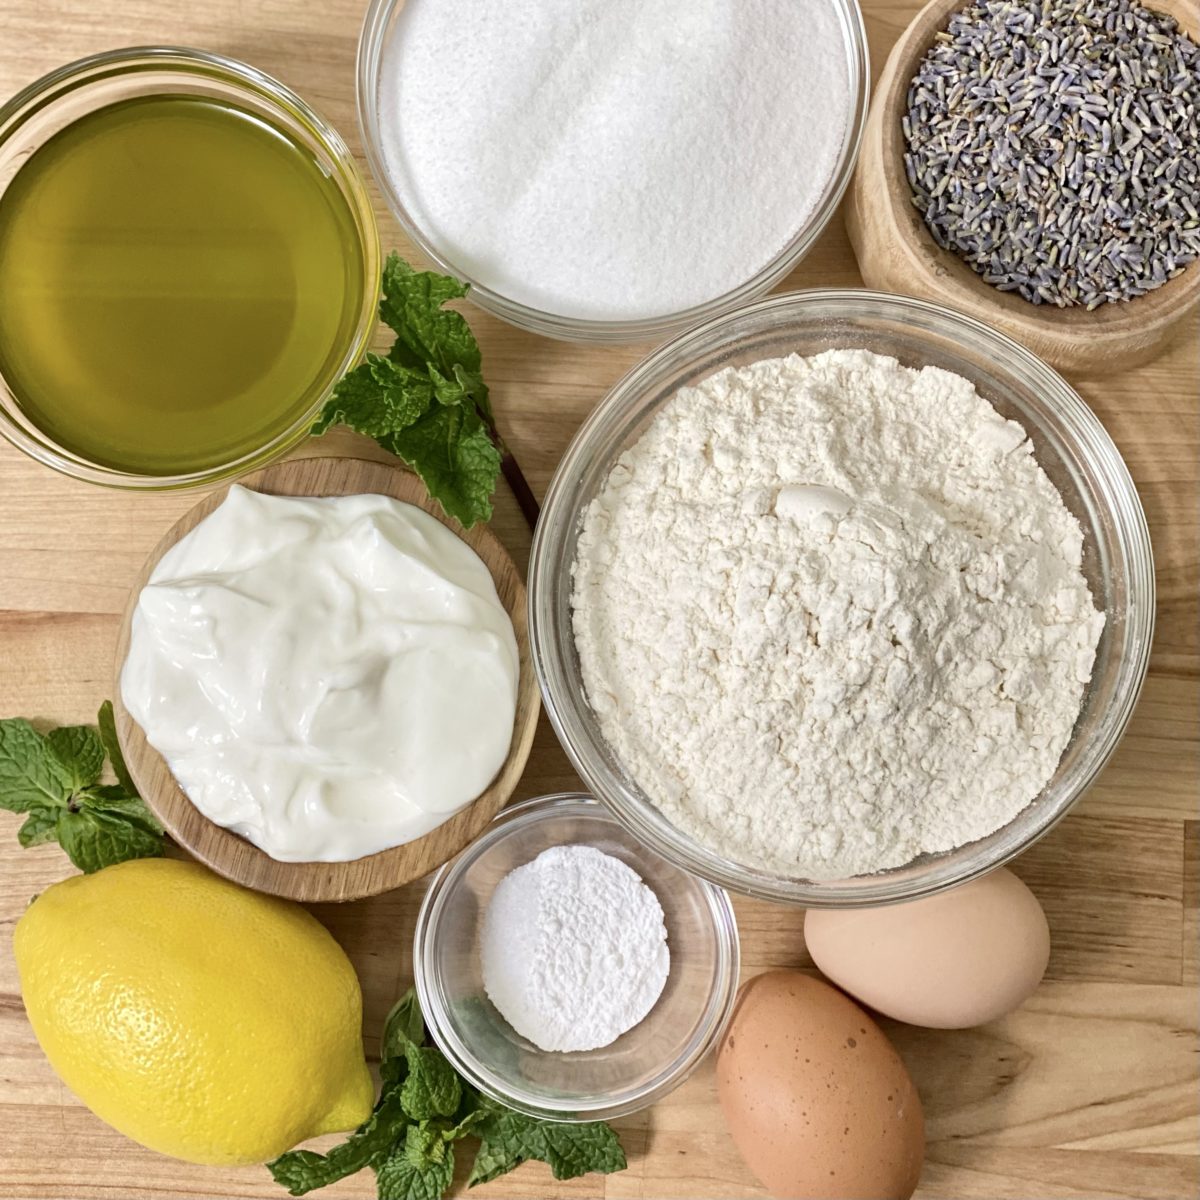 Ingredients for lemon and lavender cake including flour, sugar, lemon, lavender, olive oil, Greek yogurt, and more.